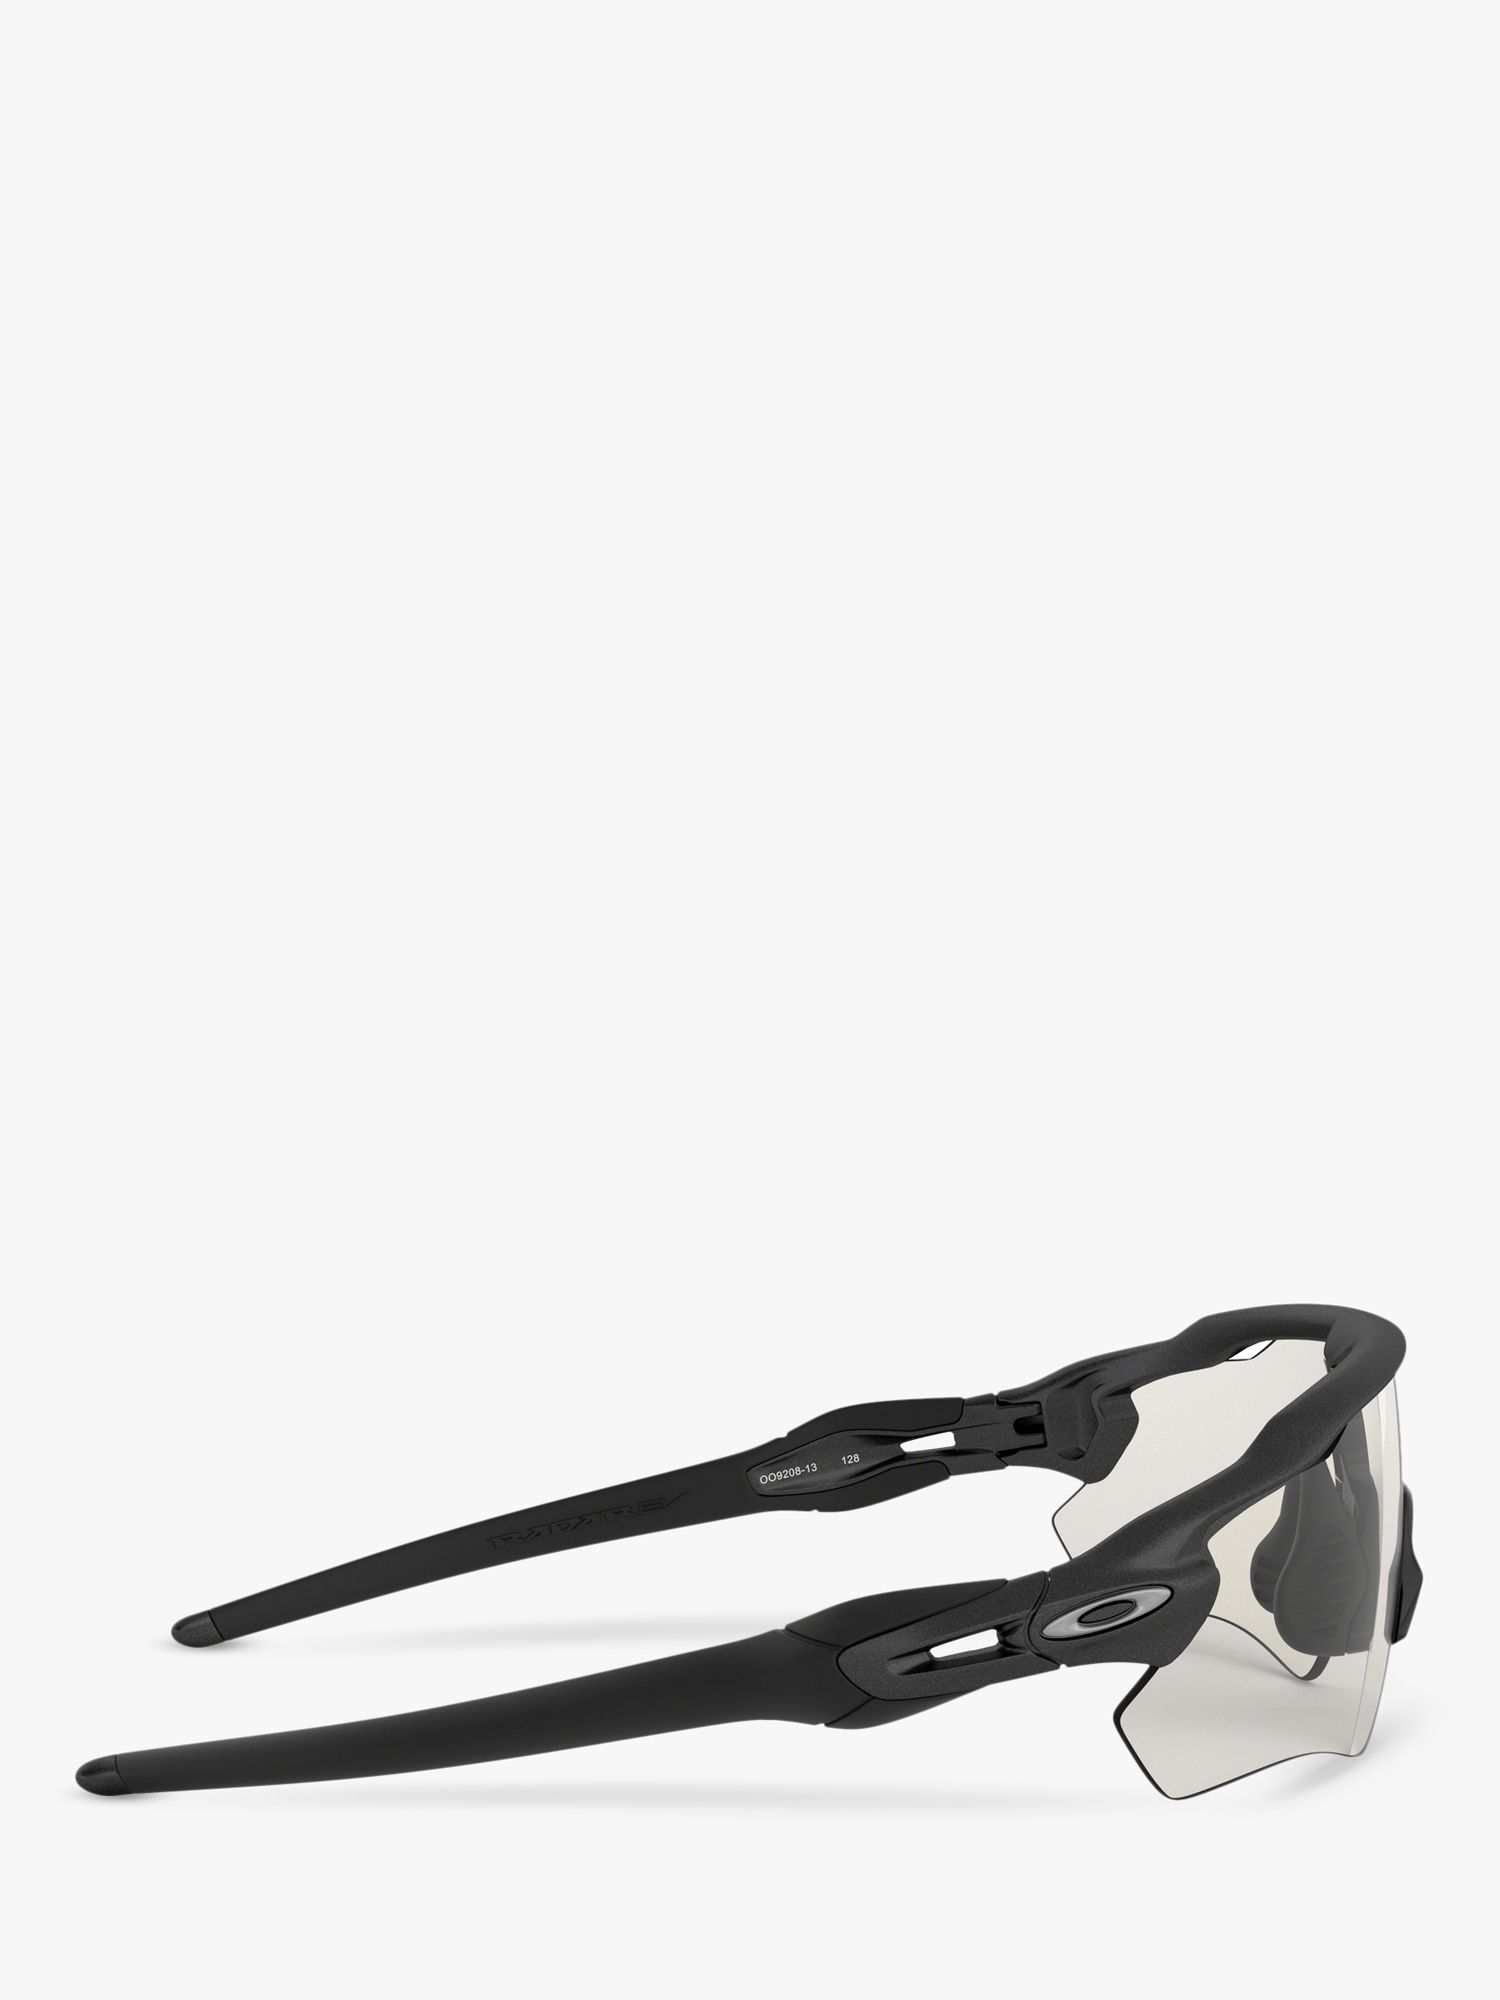 Oakley OO9208 Men's Radar EV Path Wrap Sunglasses, Black/Clear